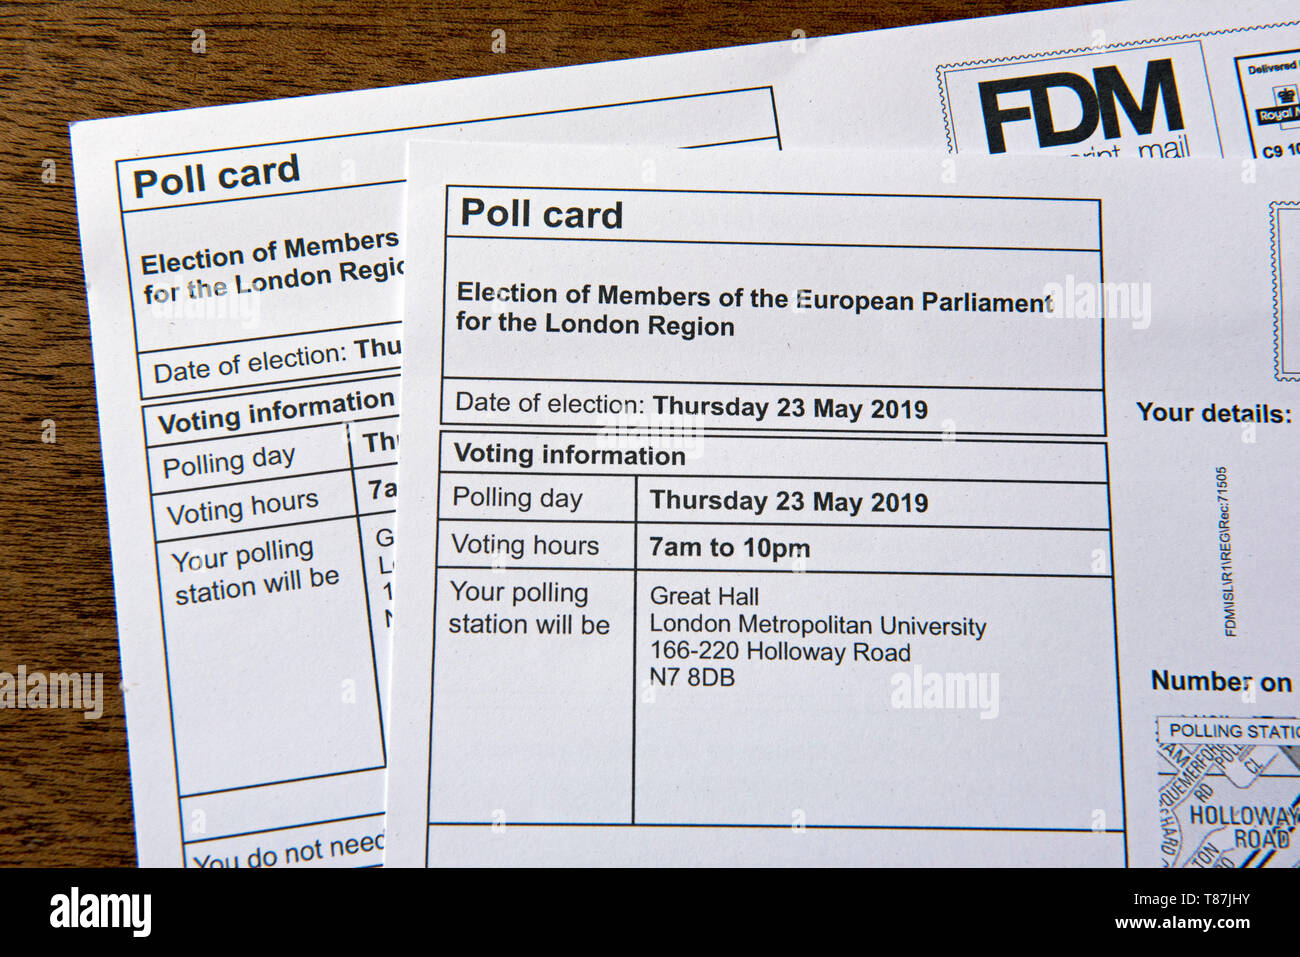 Zwei Pole Karten für die Wahlen zum Europäischen Parlament am 23. Mai 2019, London Region GROSSBRITANNIEN Stockfoto